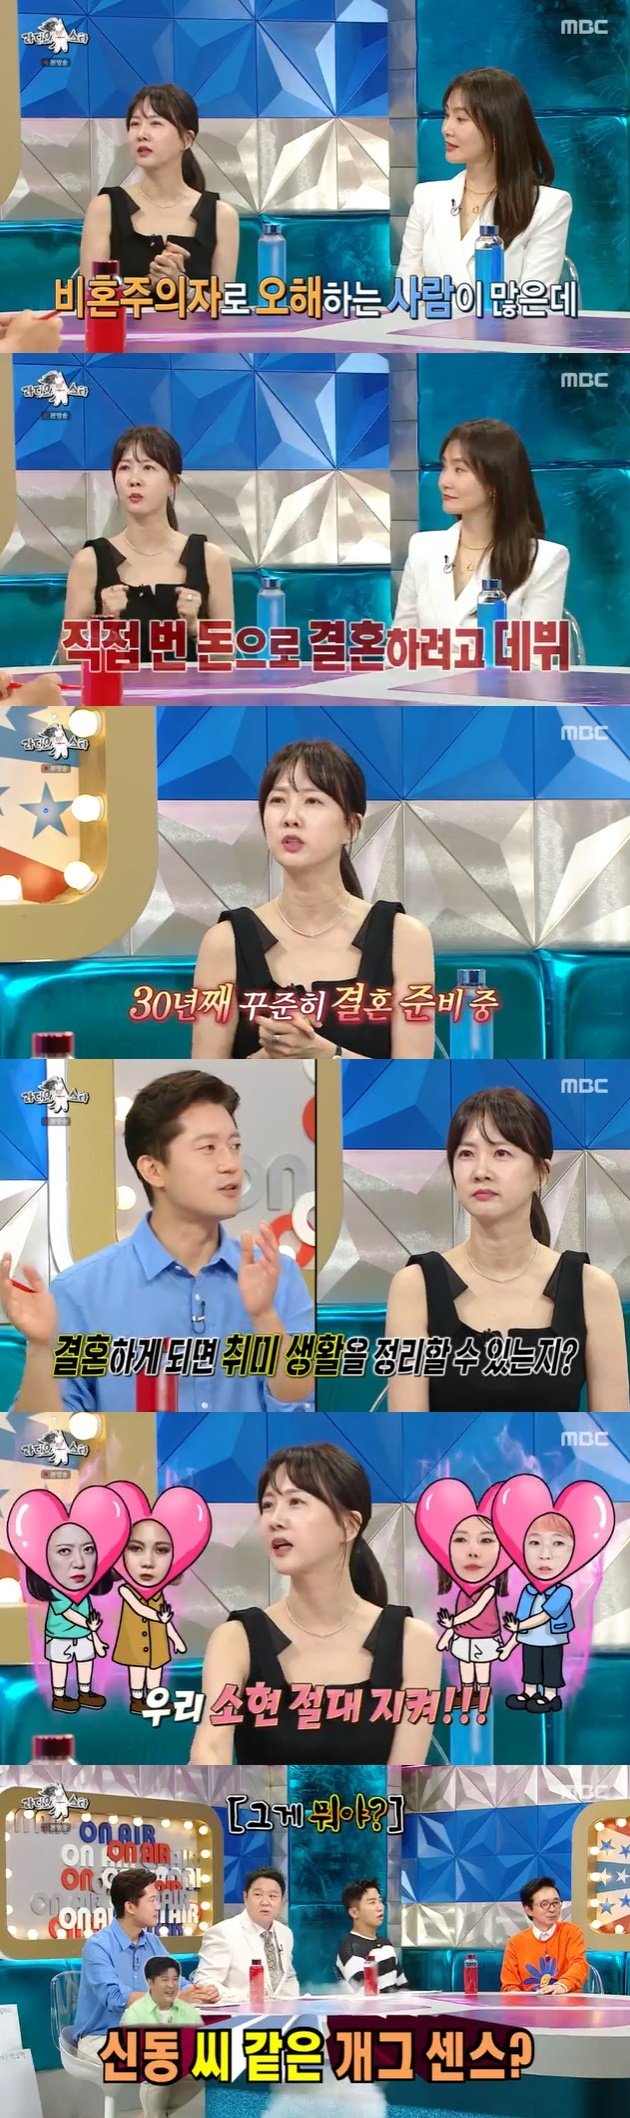 박소현 비혼주의자 NO…연예계 데뷔한 이유도 결혼 때문 [RE:TV]